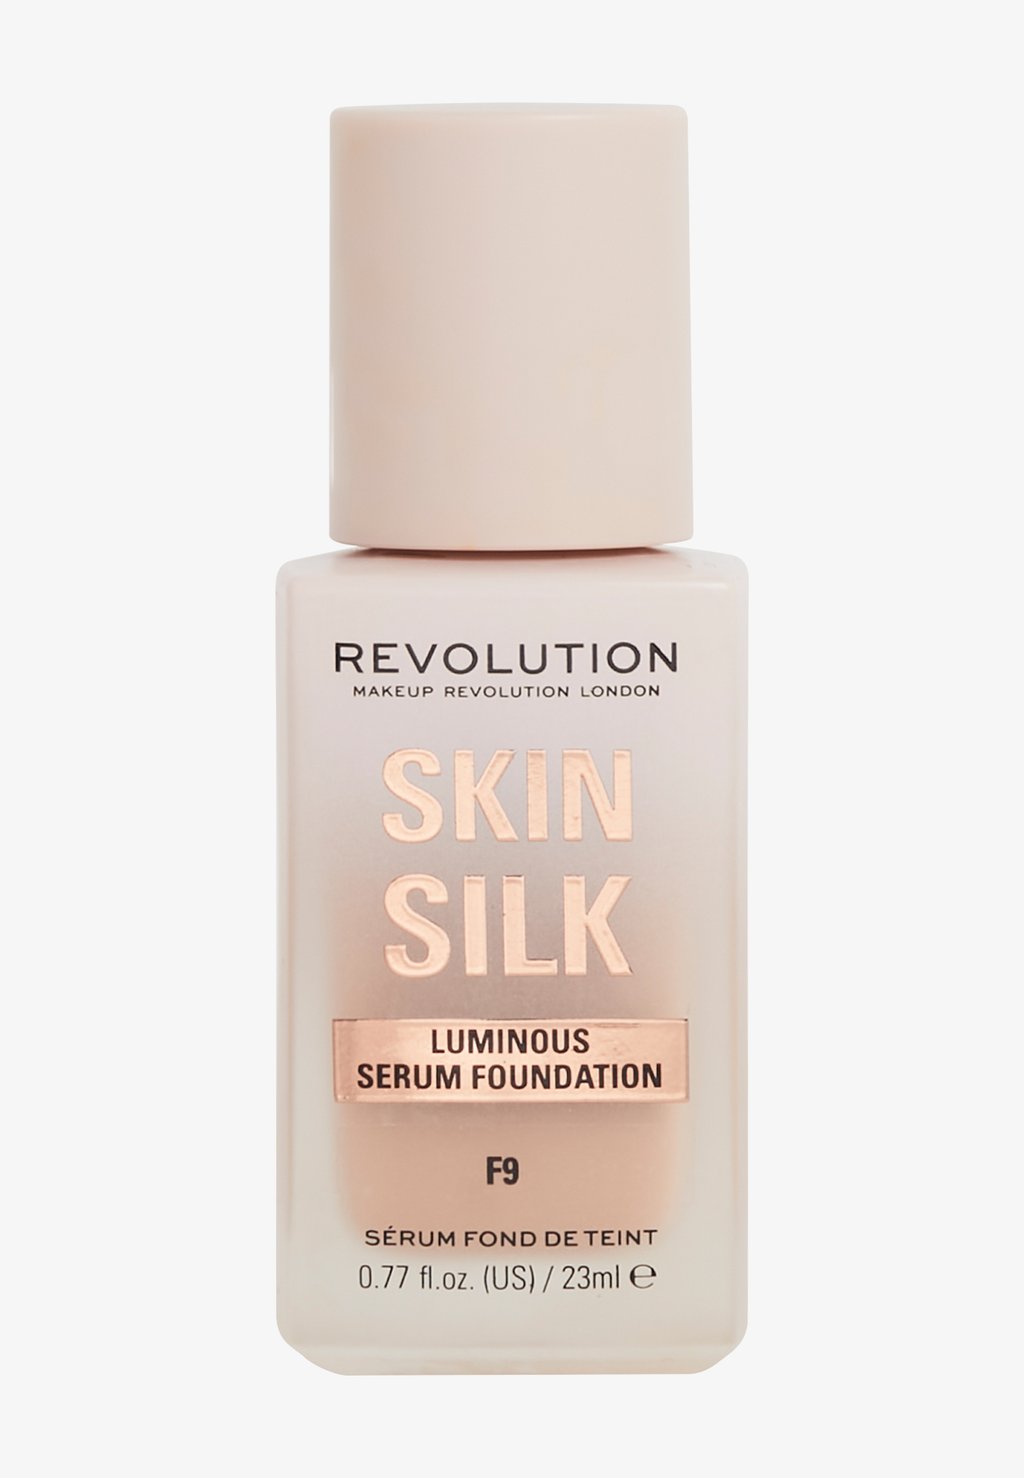 Тональная основа REVOLUTION SKIN SILK SERUM FOUNDATION Makeup Revolution, цвет f9